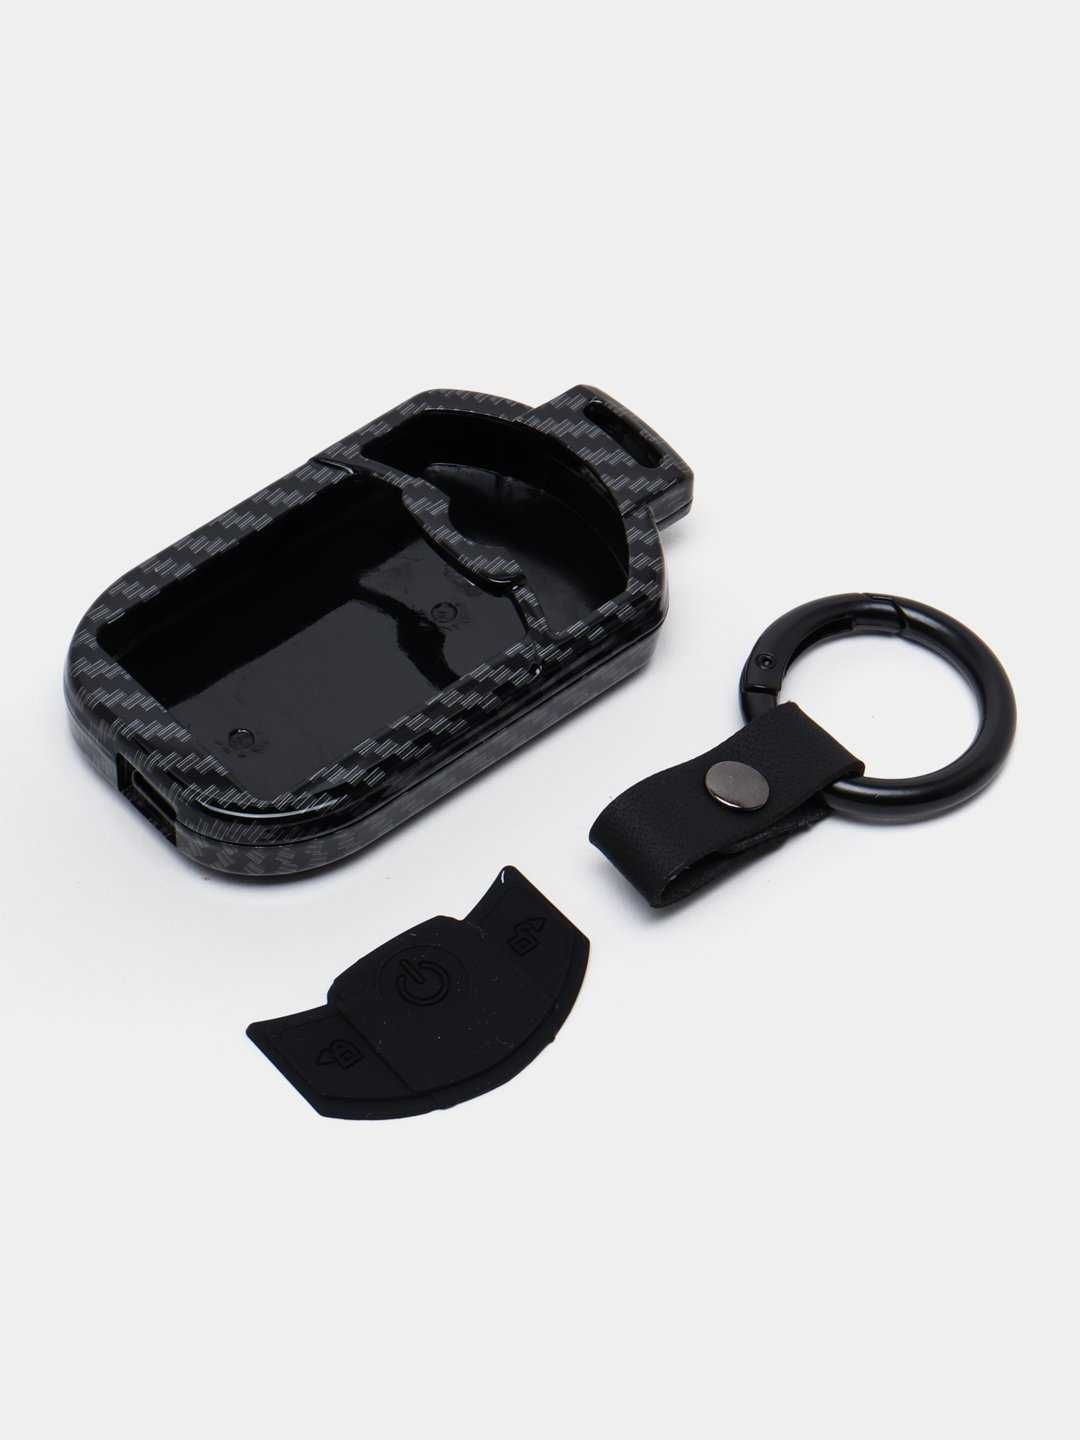 Защитный чехол карбоновый для пульта Magicar 908 - 909 черный цвет